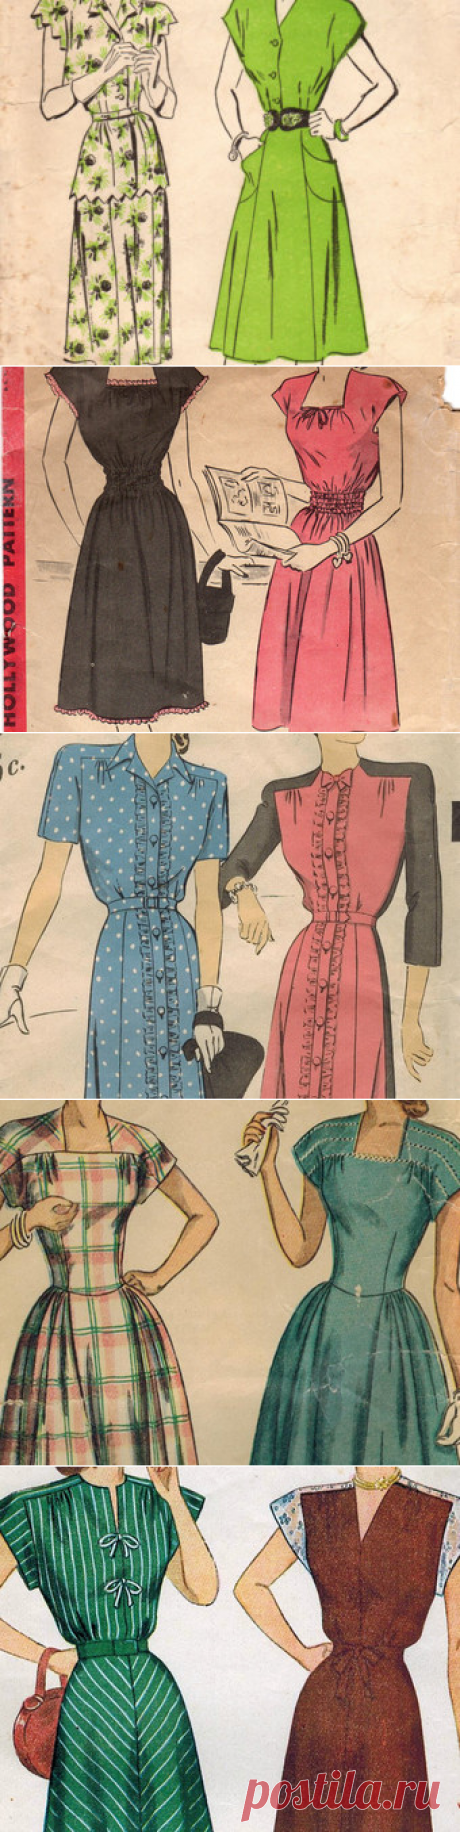 1940s Mail Order 3805 FF Vintage Sewing Pattern Misses Dress